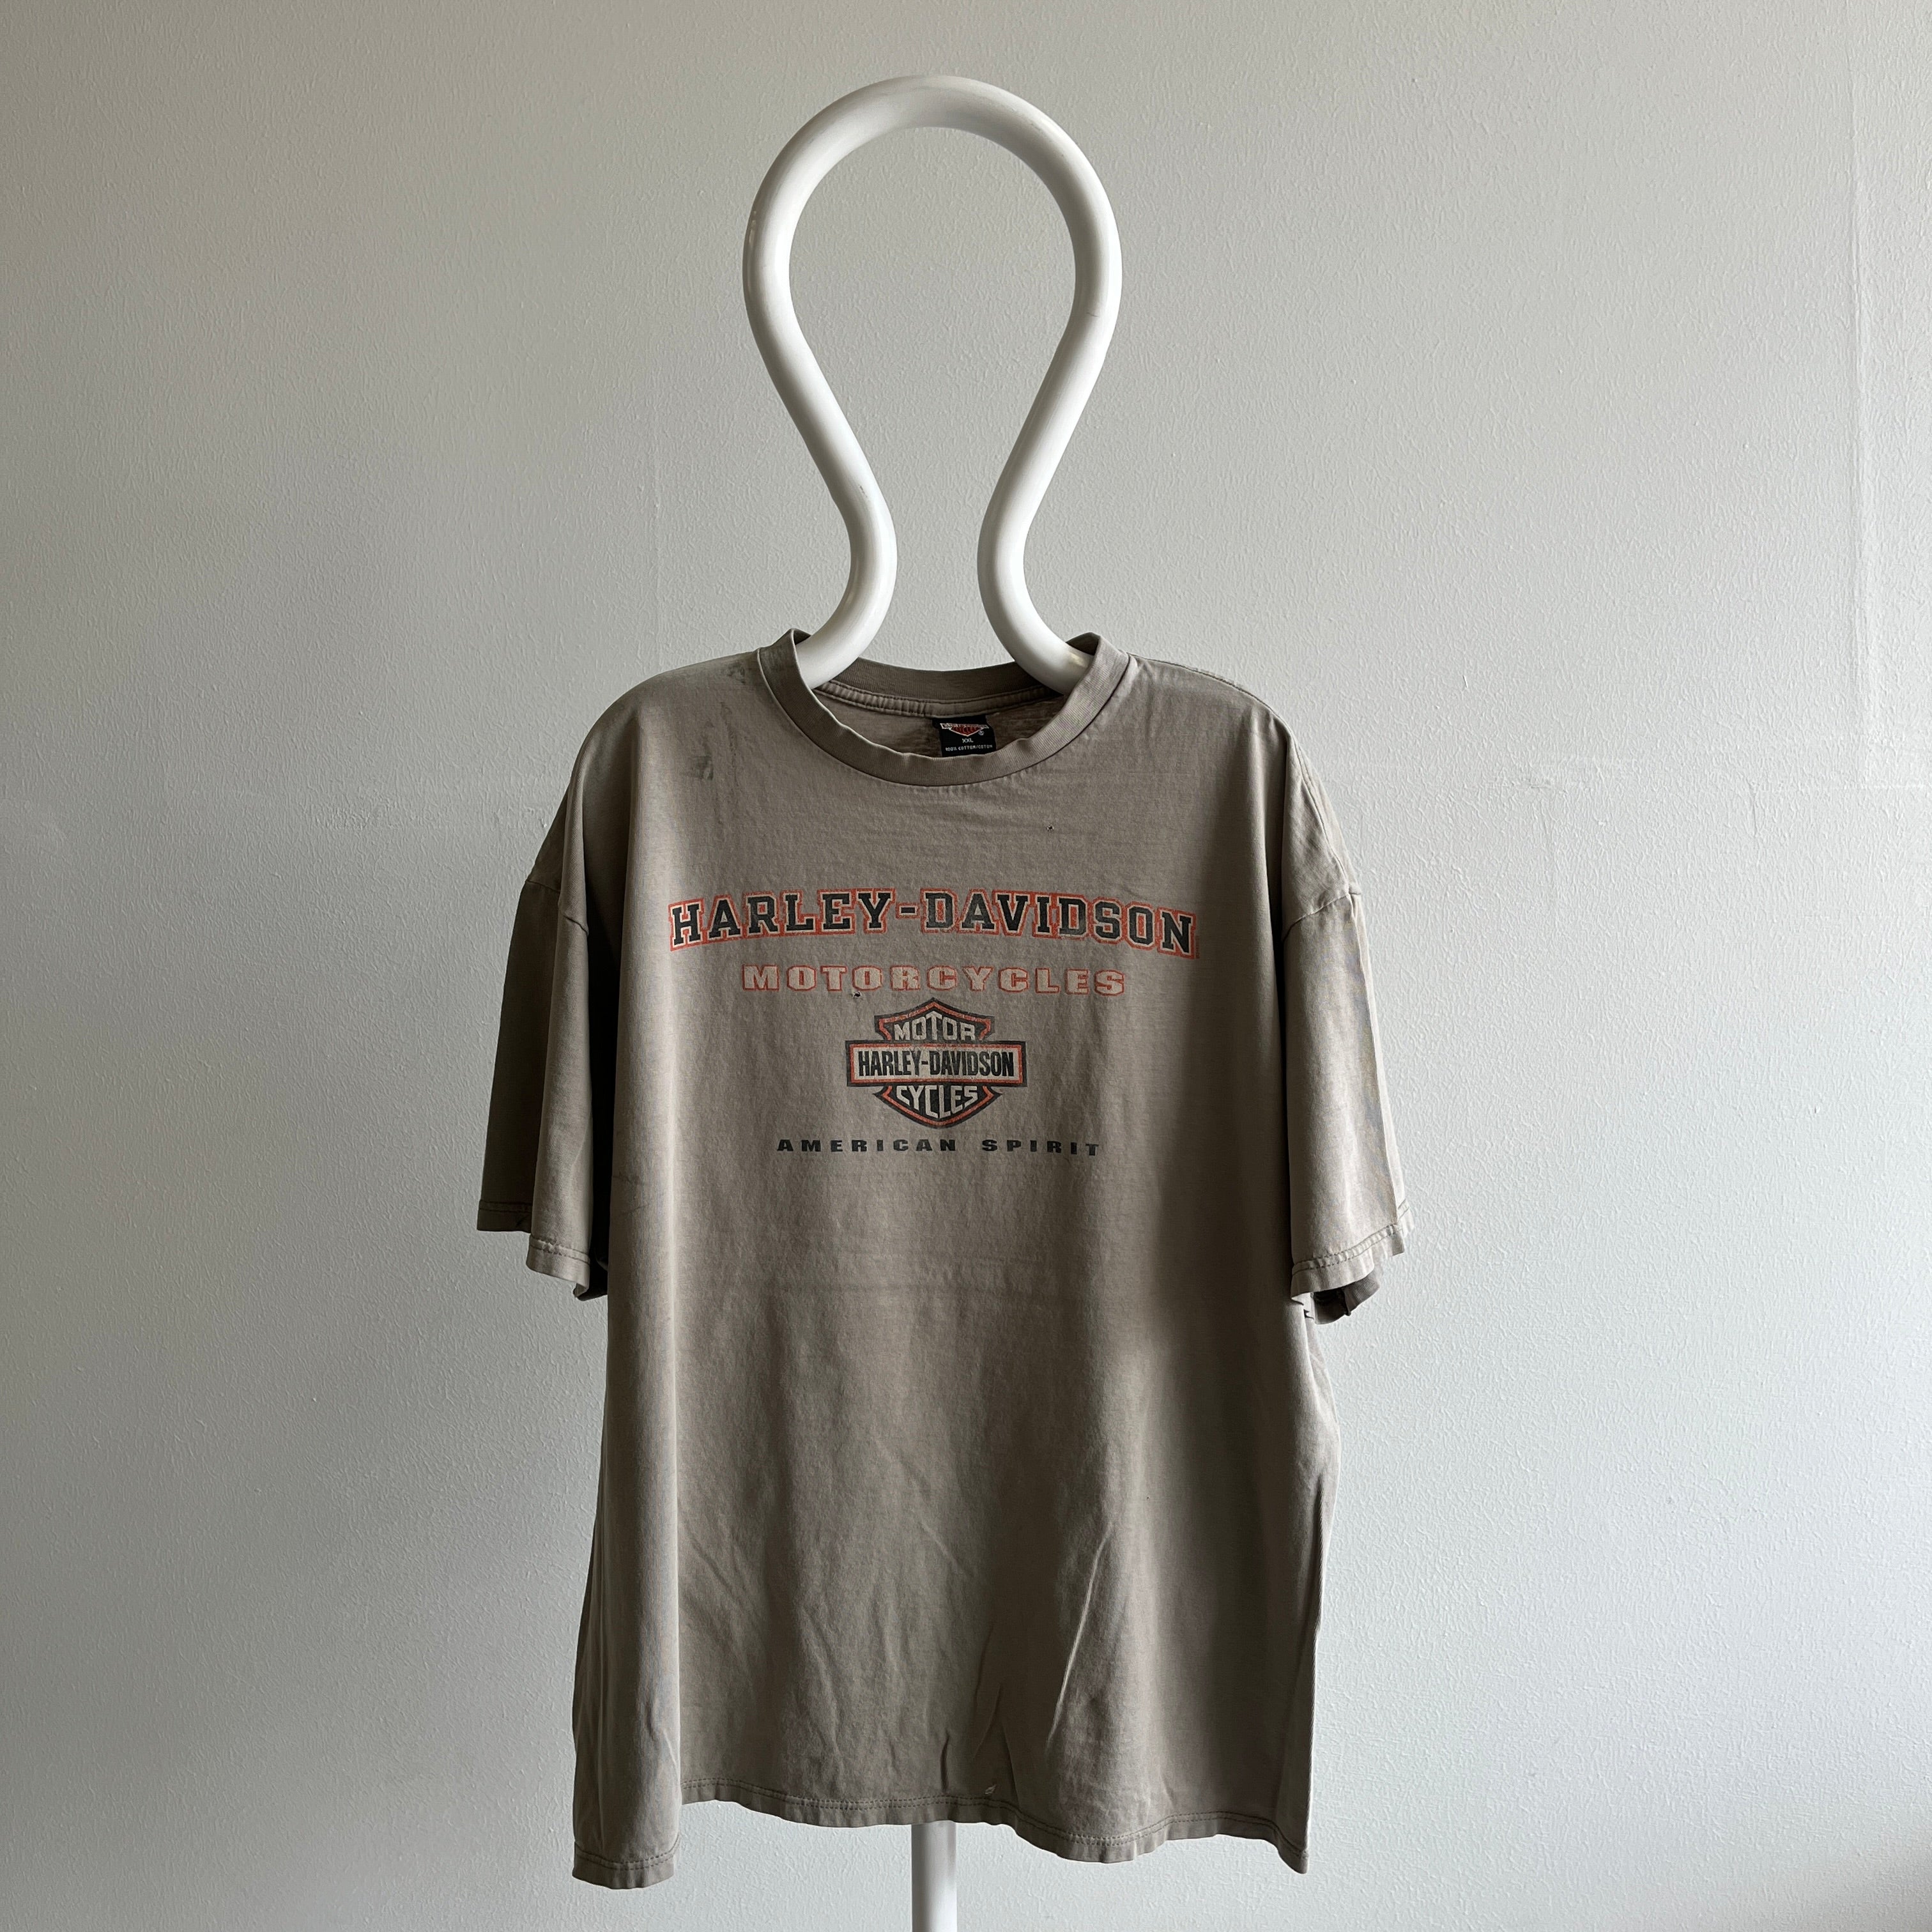 T-shirt Harley 2000 usé et fané